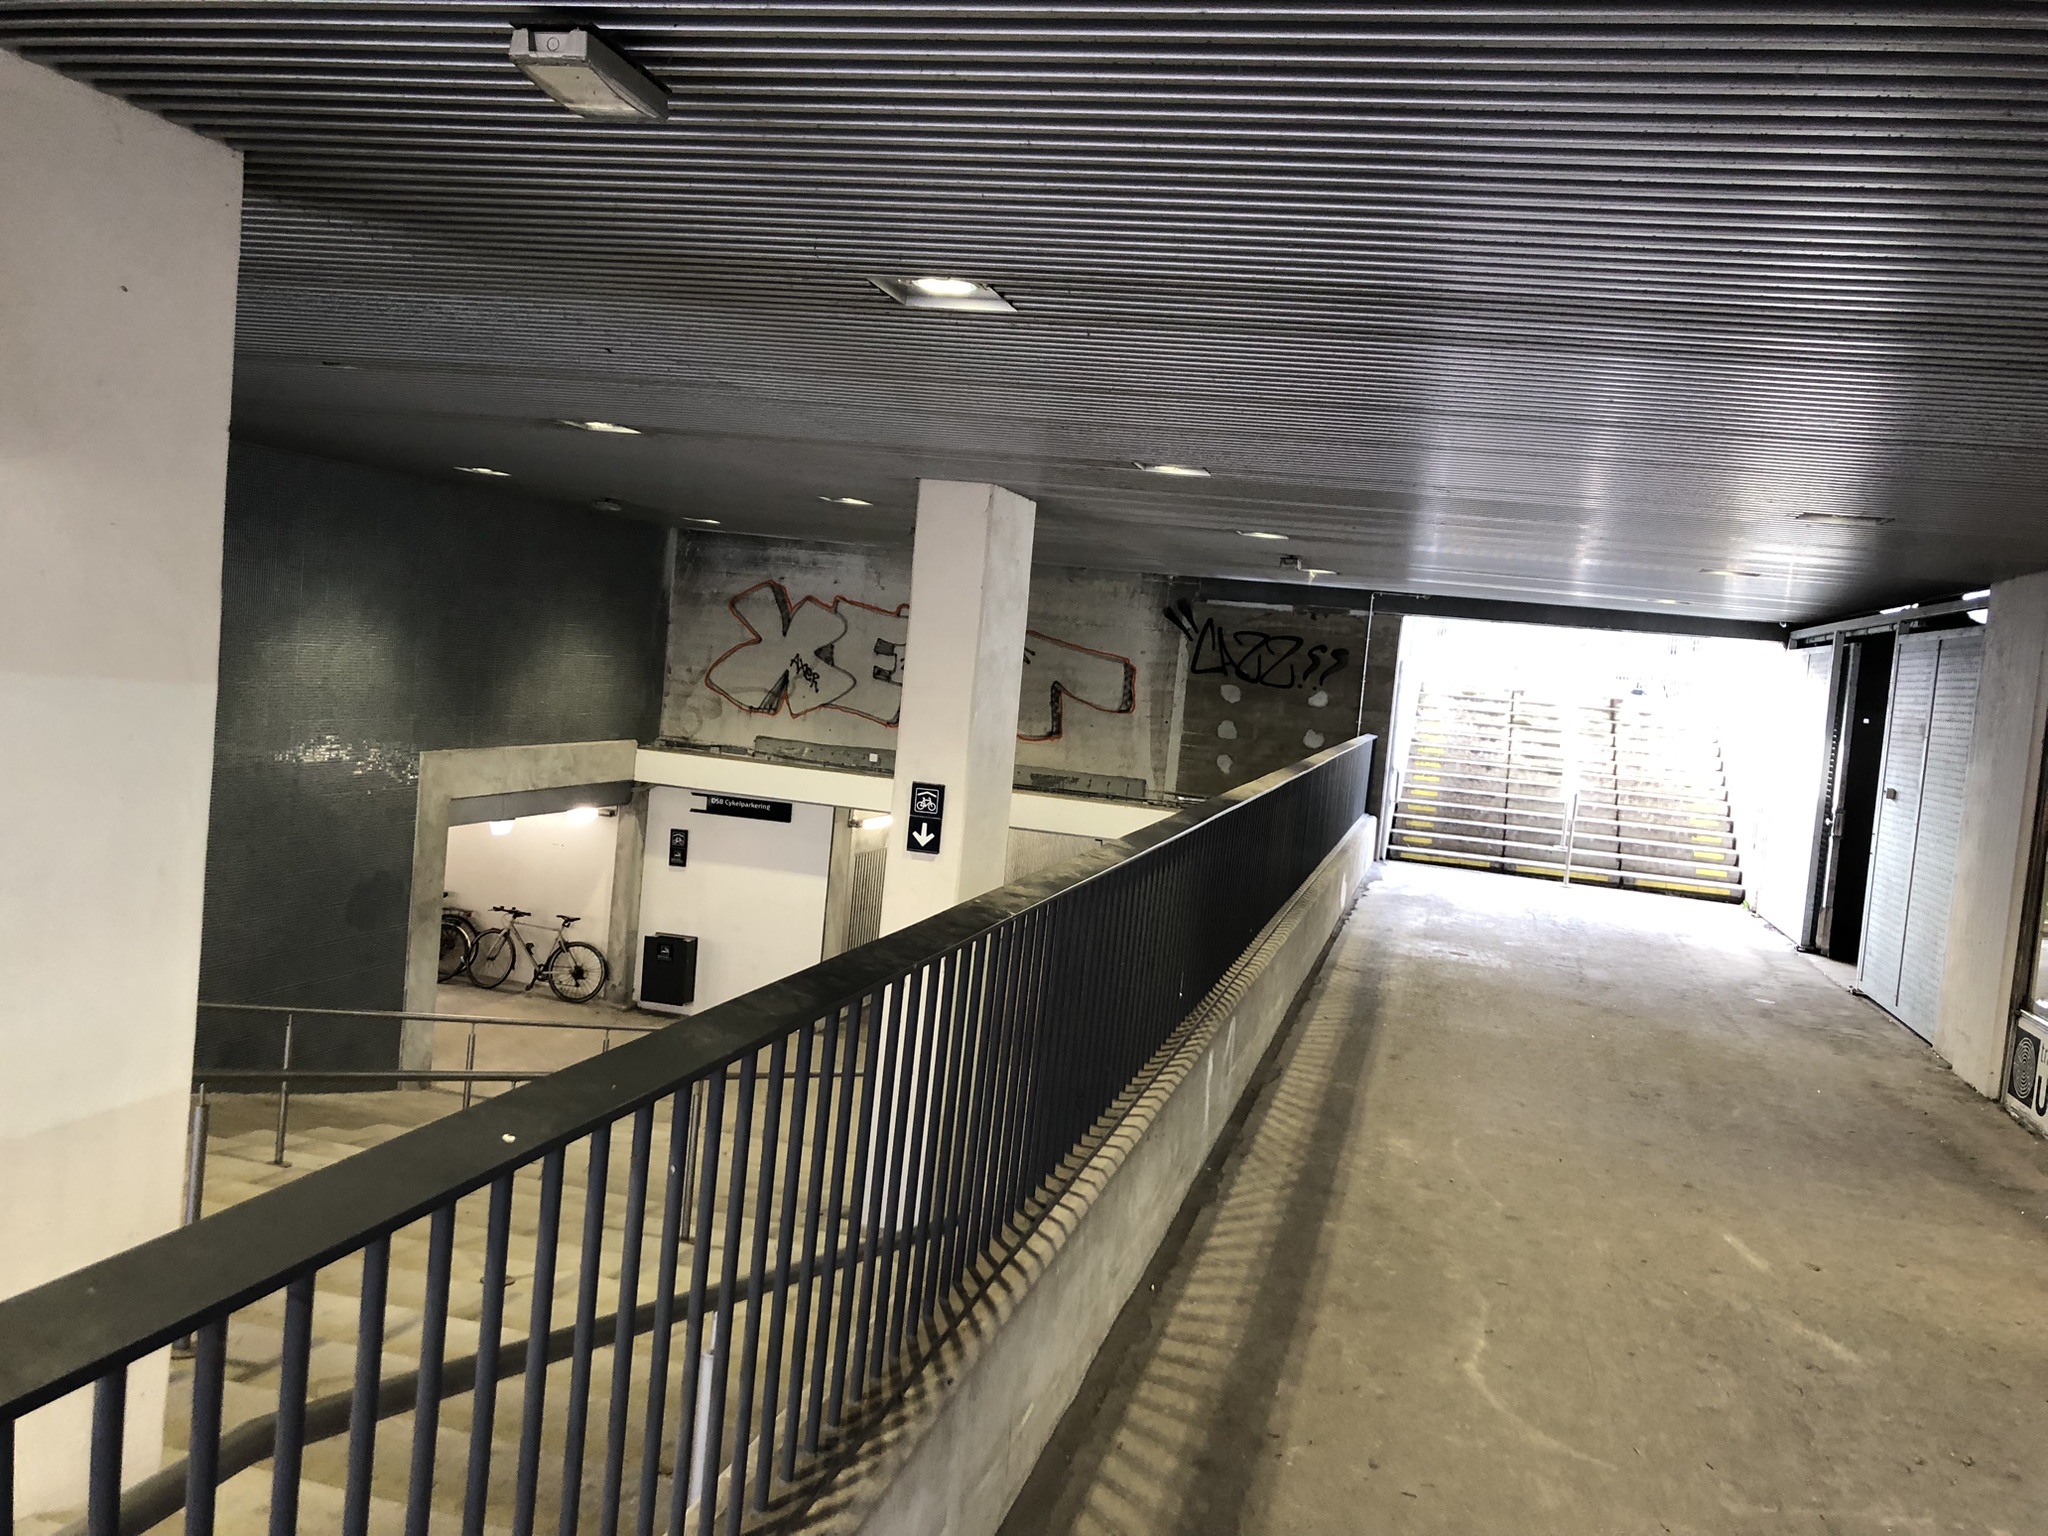 Den nye tunnel og trappe under s-togsbanen fører direkte til cykelkælderen under Lyngby Station. Området her er indrettet med bl.a. høj musik og god belysning for at skabe tryghed for passagerer og andre.